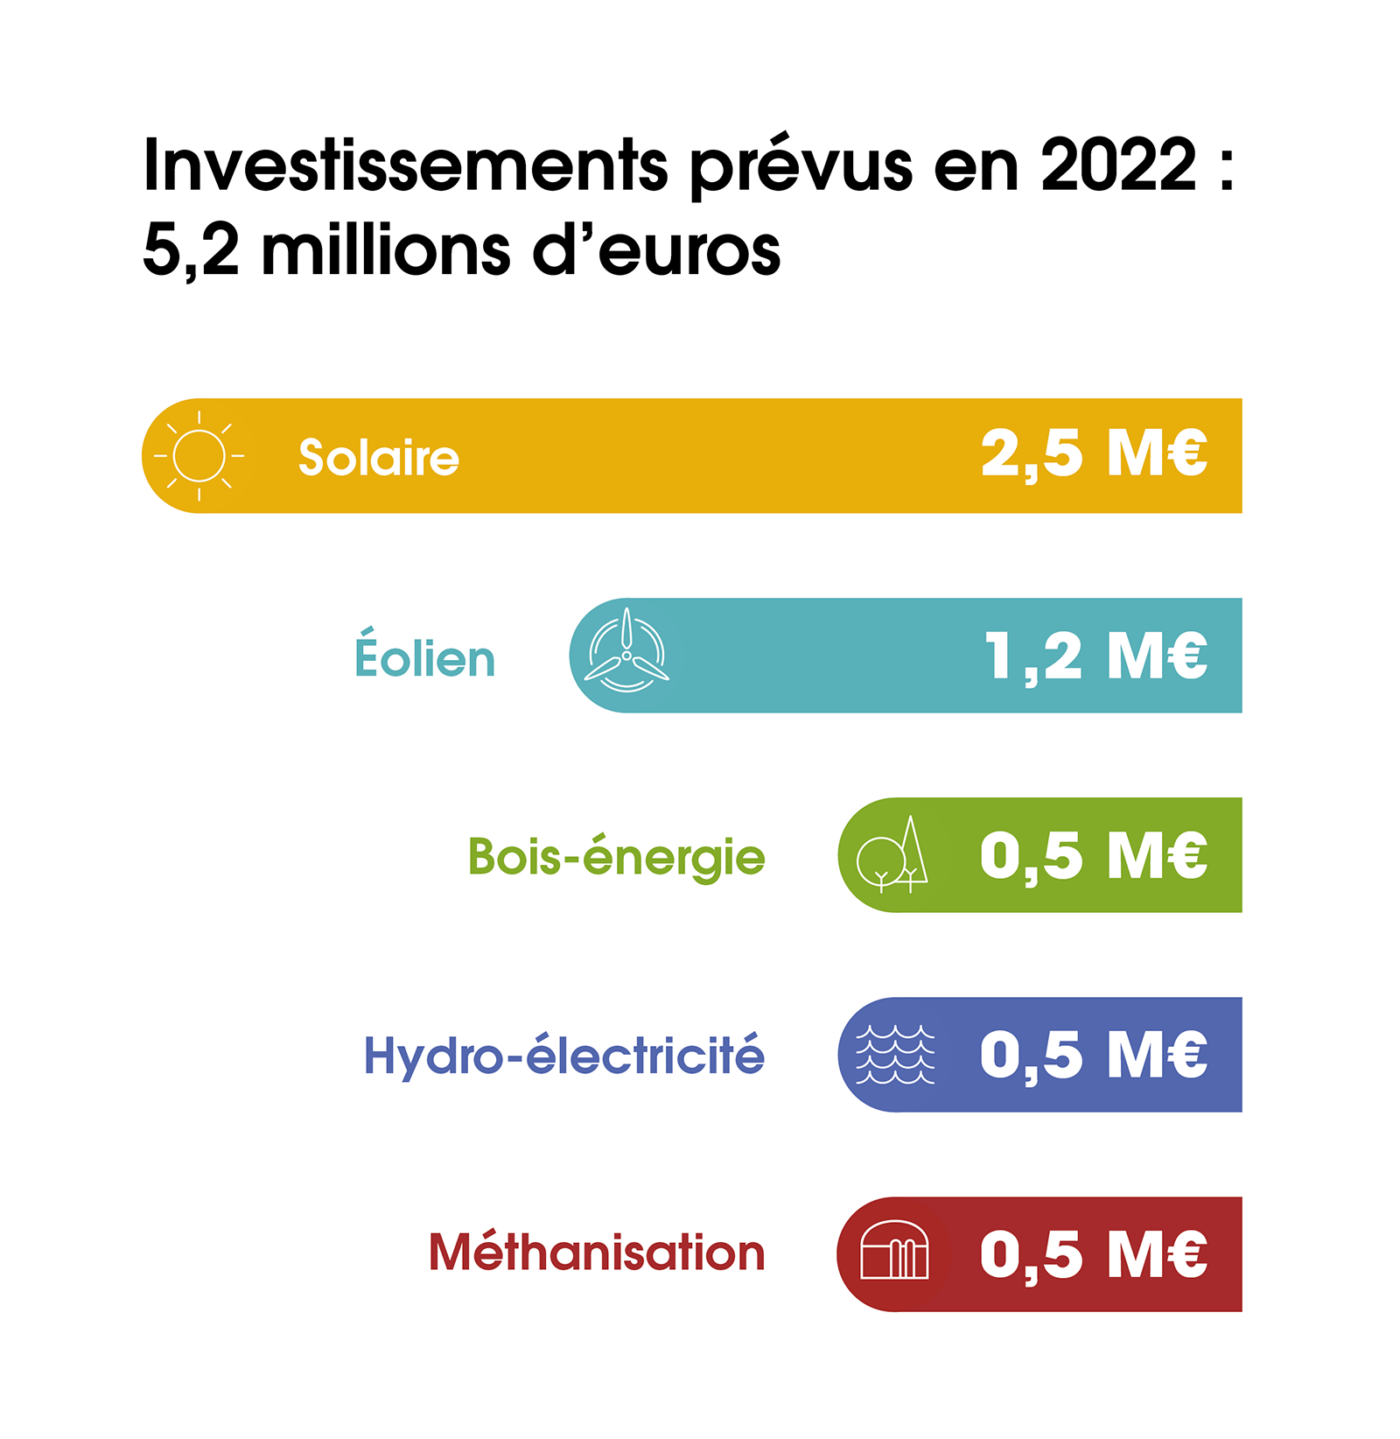 [Graphique] 5,2 millions à investir en prévision pour 2022, dont 2,5 dans le solaire, 1,2 dans l'éolien et 0,5 respectivement pour le bois-énergie, l'hydroélectricité et la méthanisation.